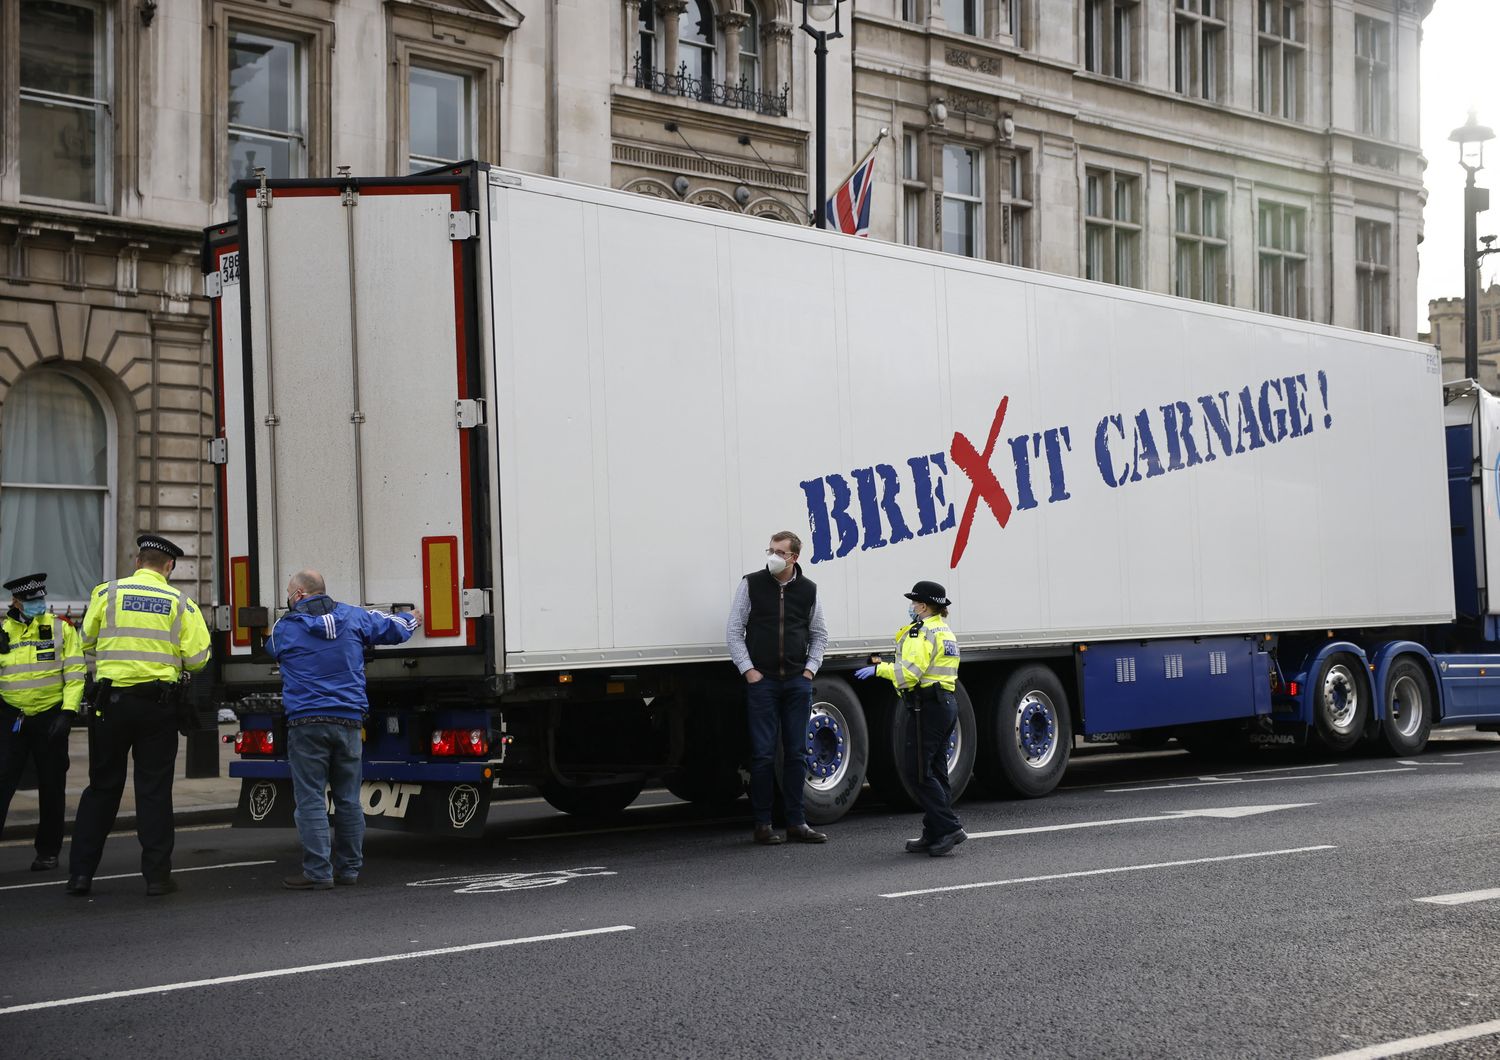 &quot;La Brexit &egrave; un massacro&quot;, dice la scritta di protesta su un camion fermato dalla polizia a Londra